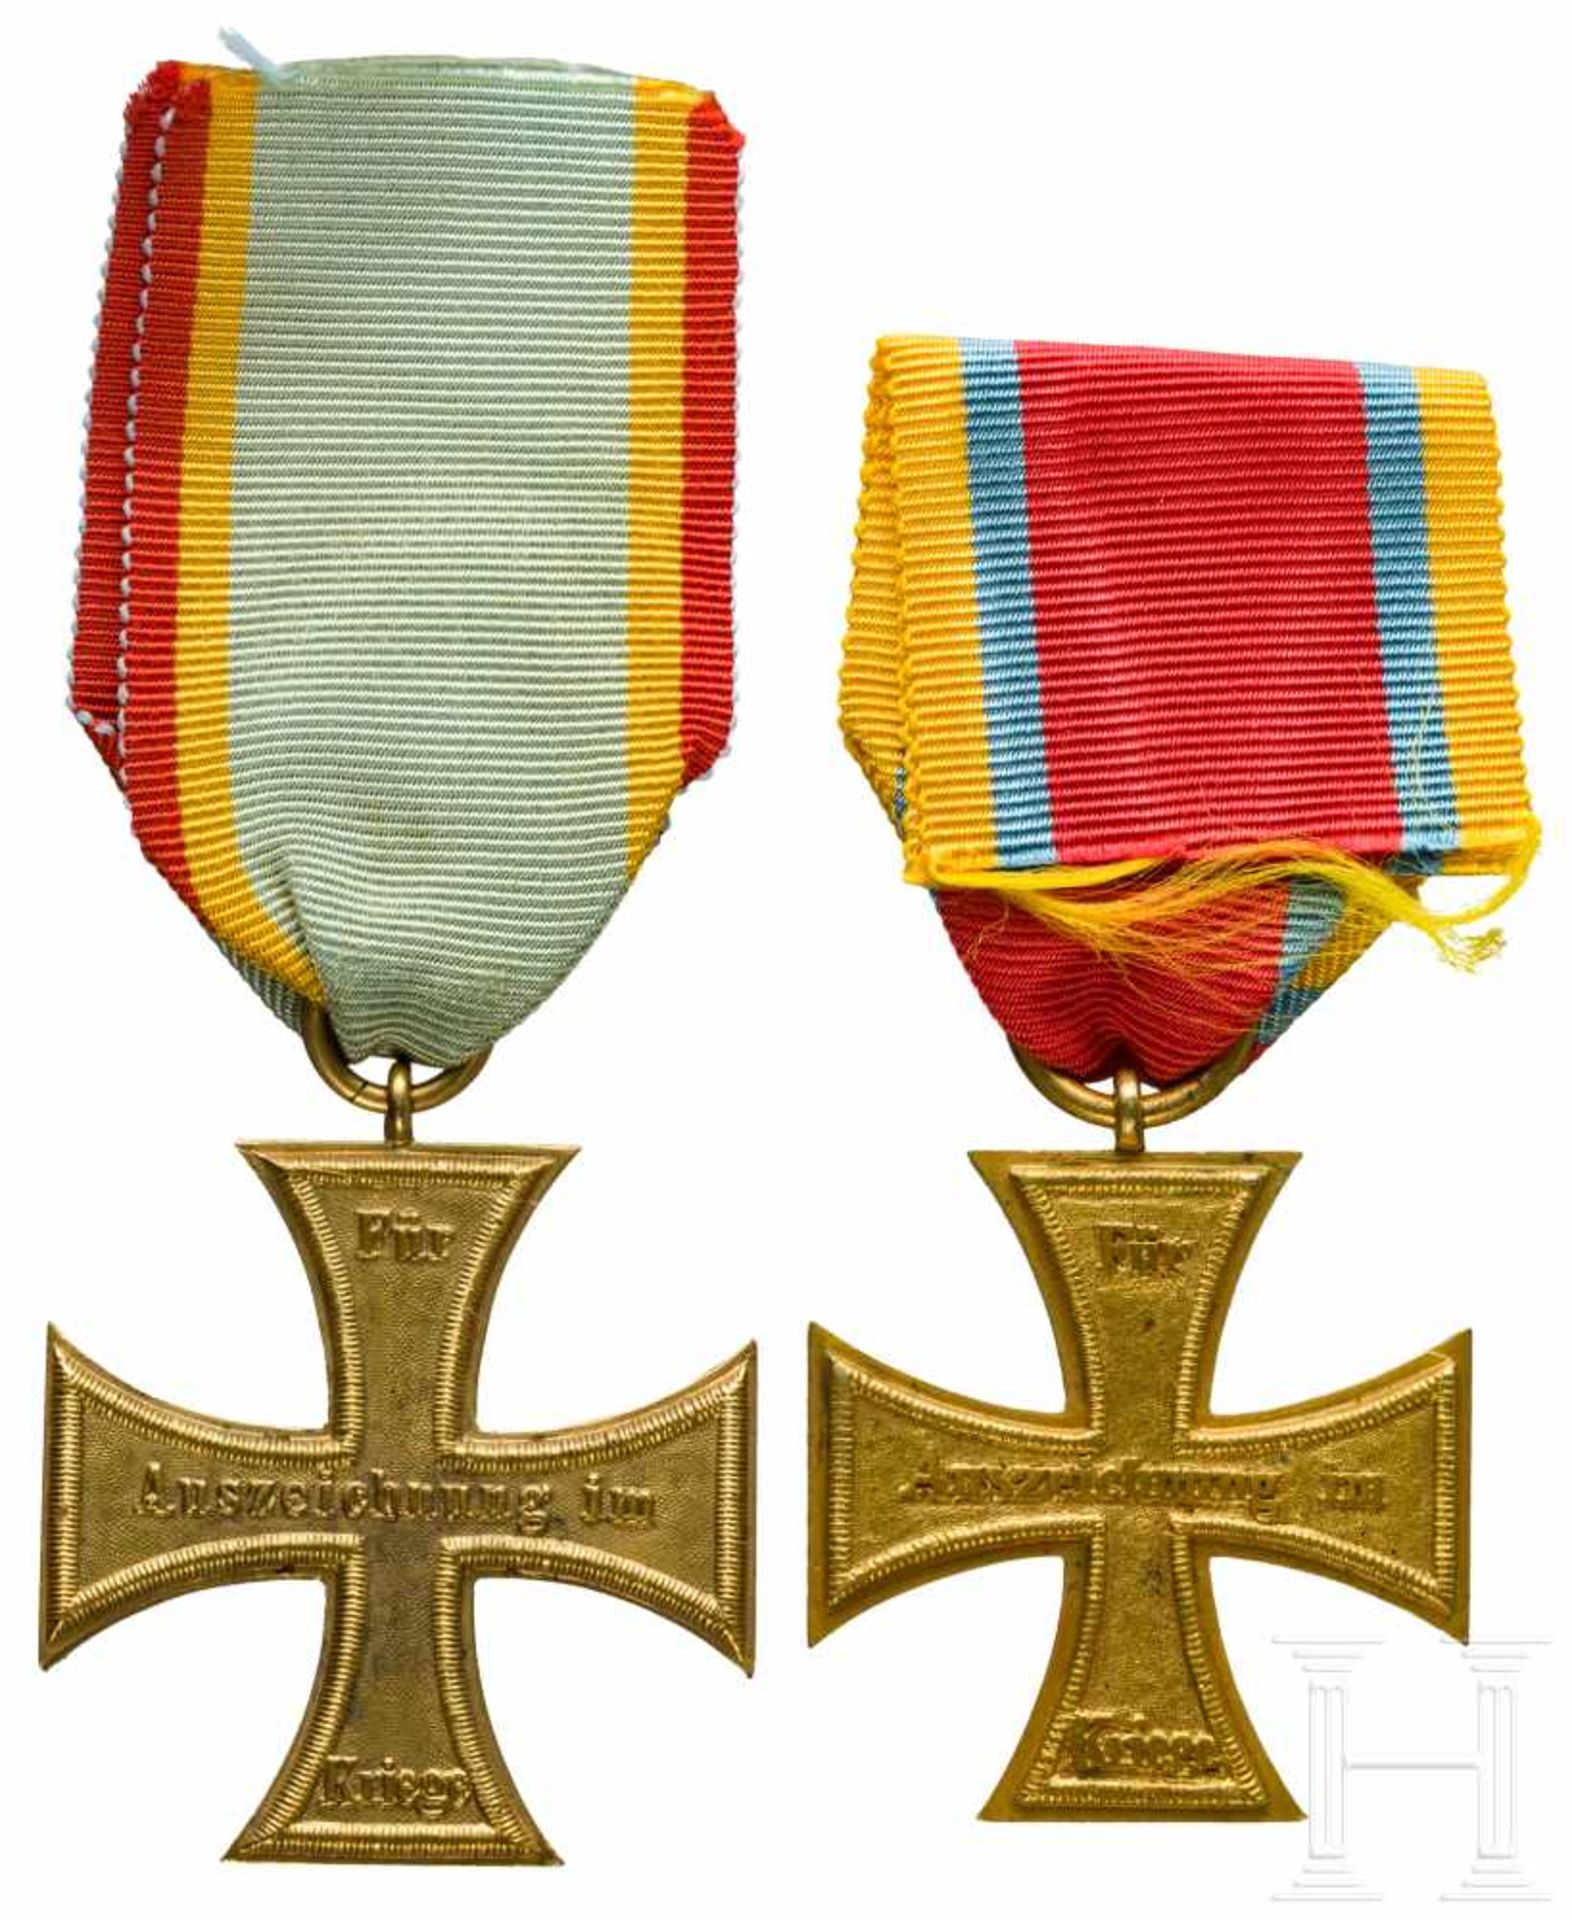 Mecklenburg-Schwerin - two Military Service Crosses 1870 and 1877Jeweils Geschützbronze, Breite - Bild 2 aus 2